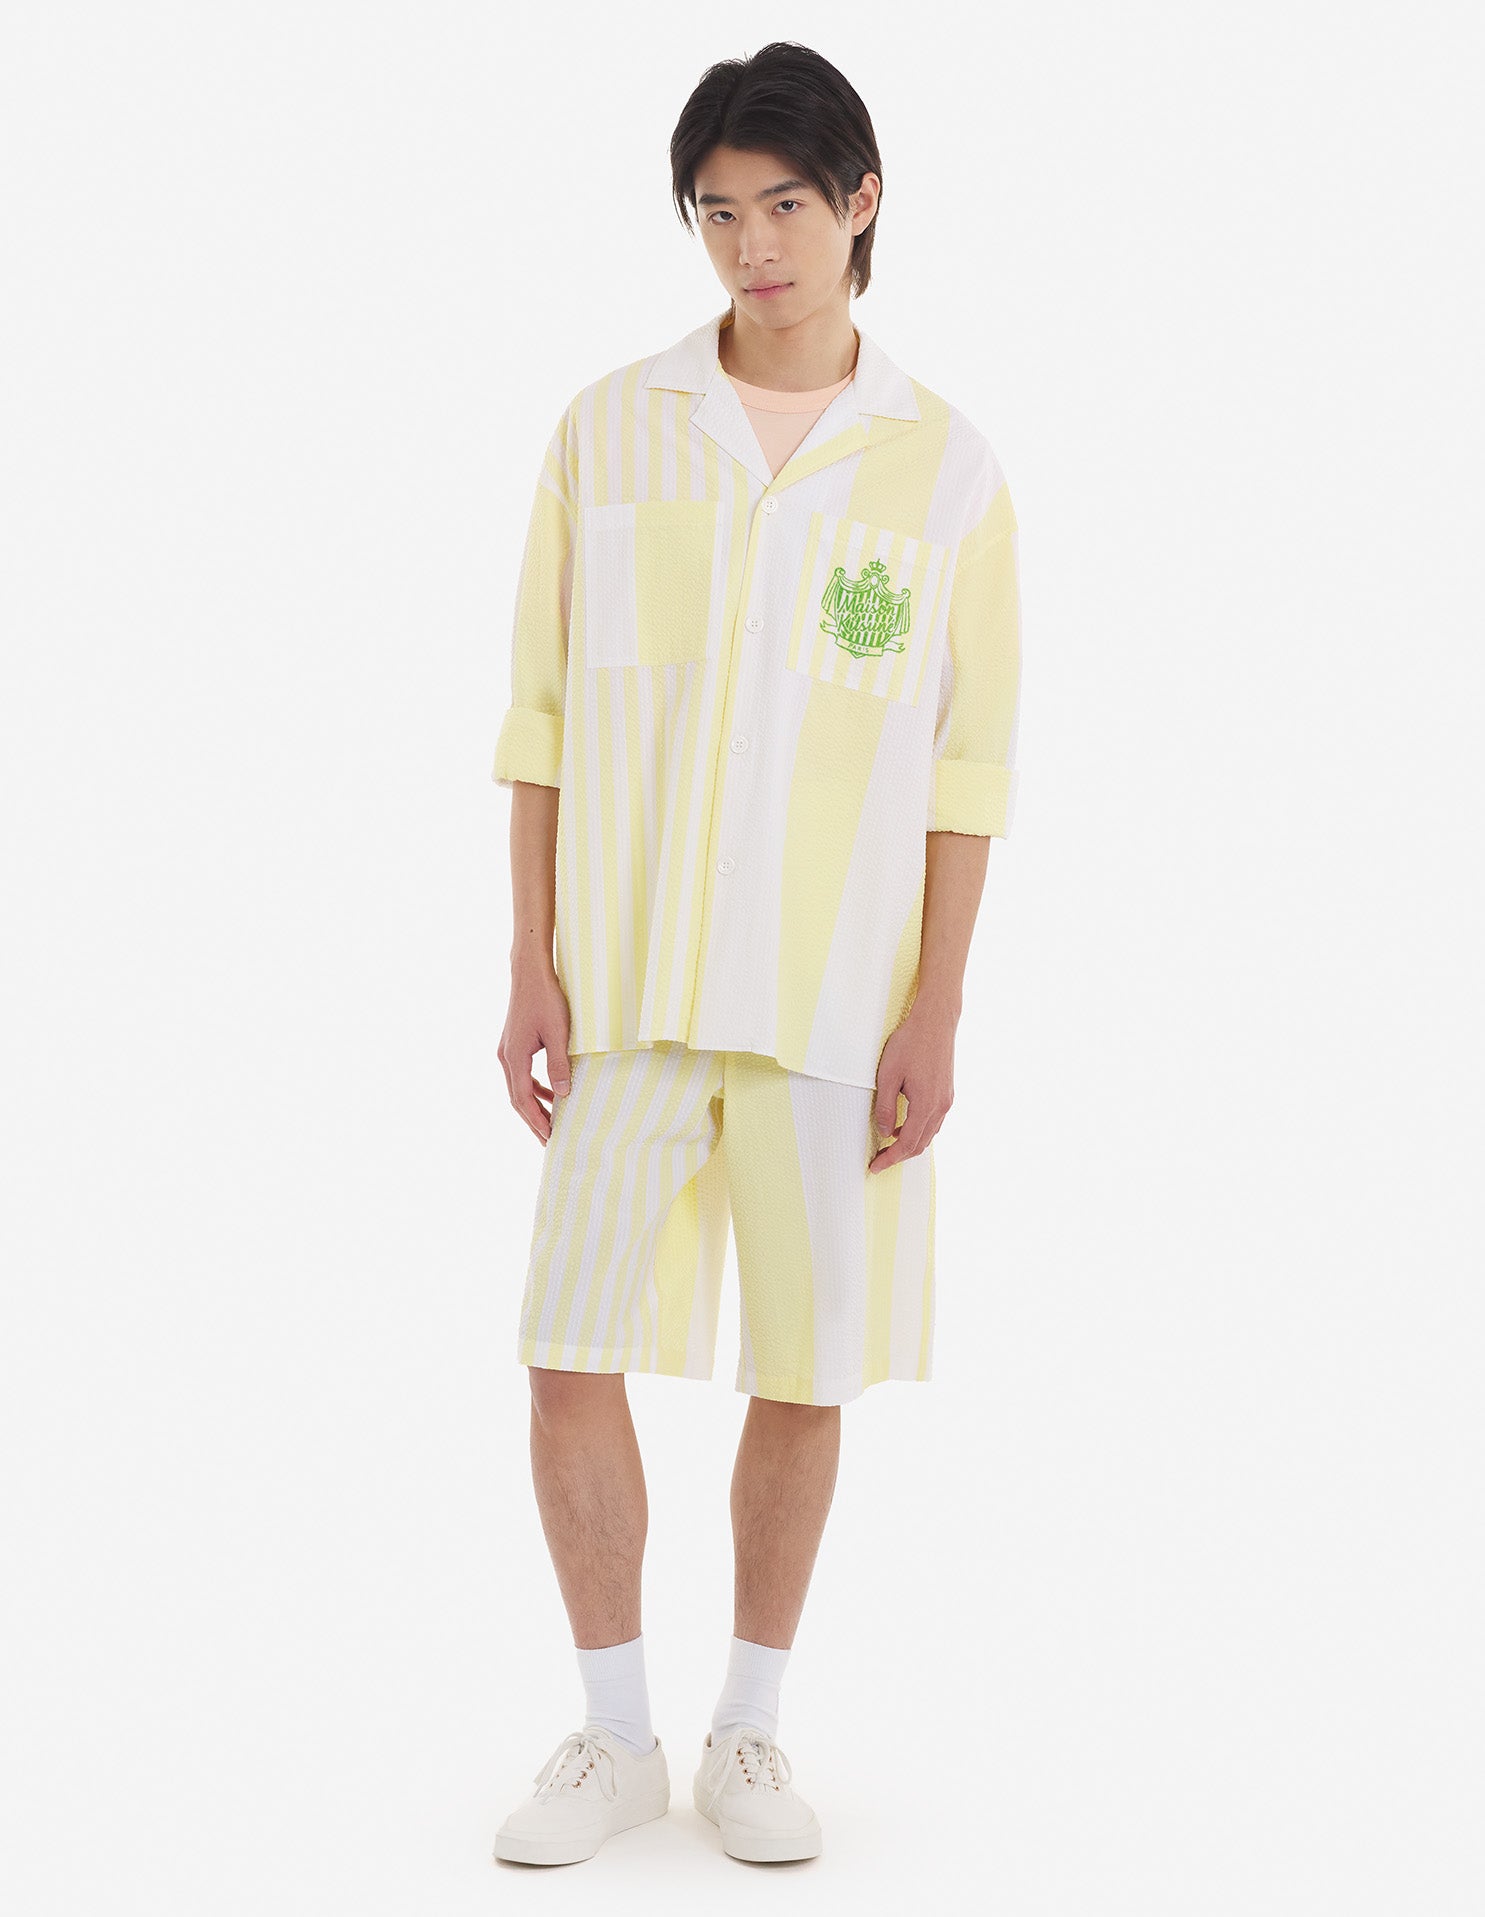 Maison Kitsune | overshirts for men - Poolside Stripes | lemon | kapok